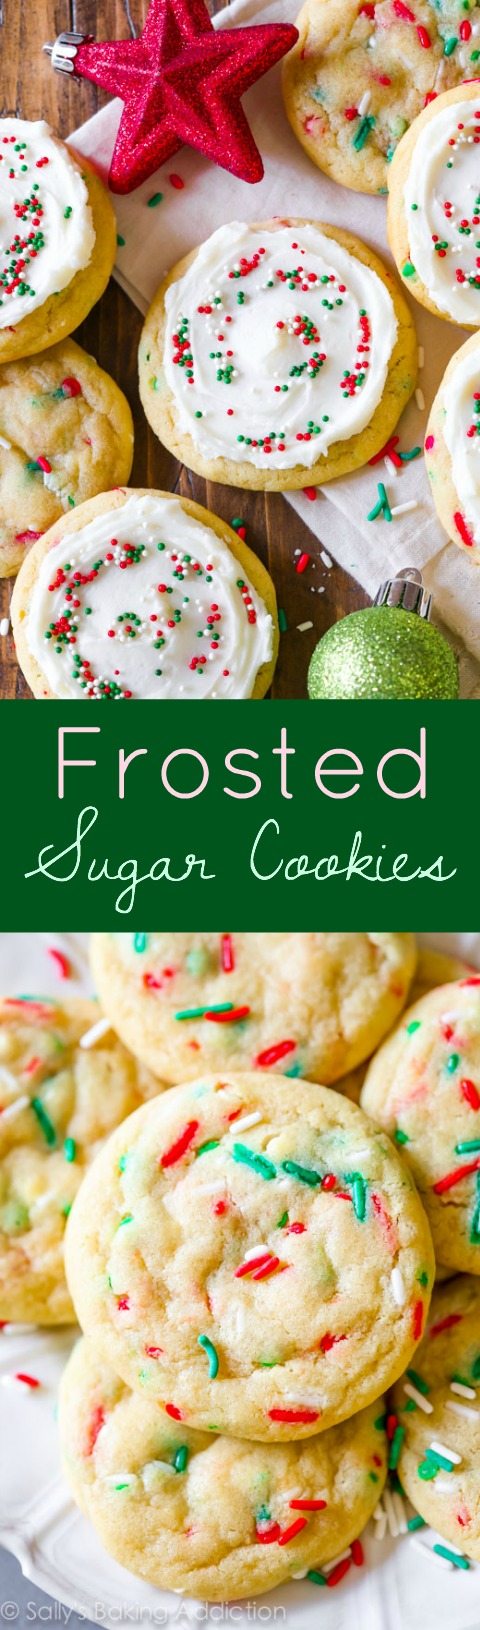 Biscuits au sucre funfetti de Noël givrés avec des pépites supplémentaires! sallysbakingaddiction.com